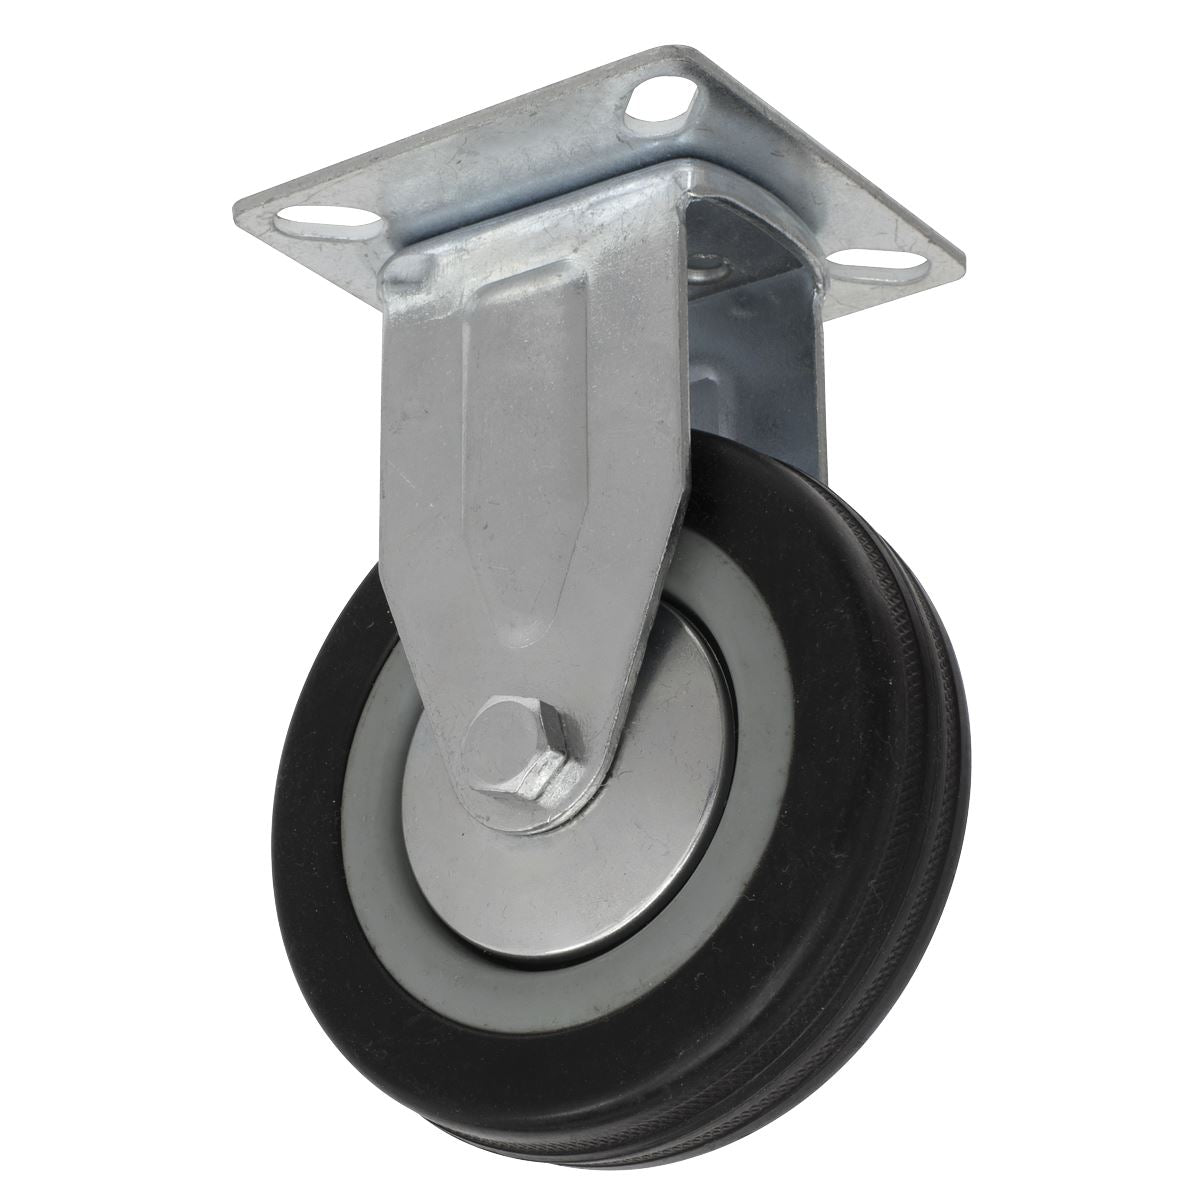 Sealey 4pc Castor Wheel Combo - Fixed & Swivel Plate Ø100mm